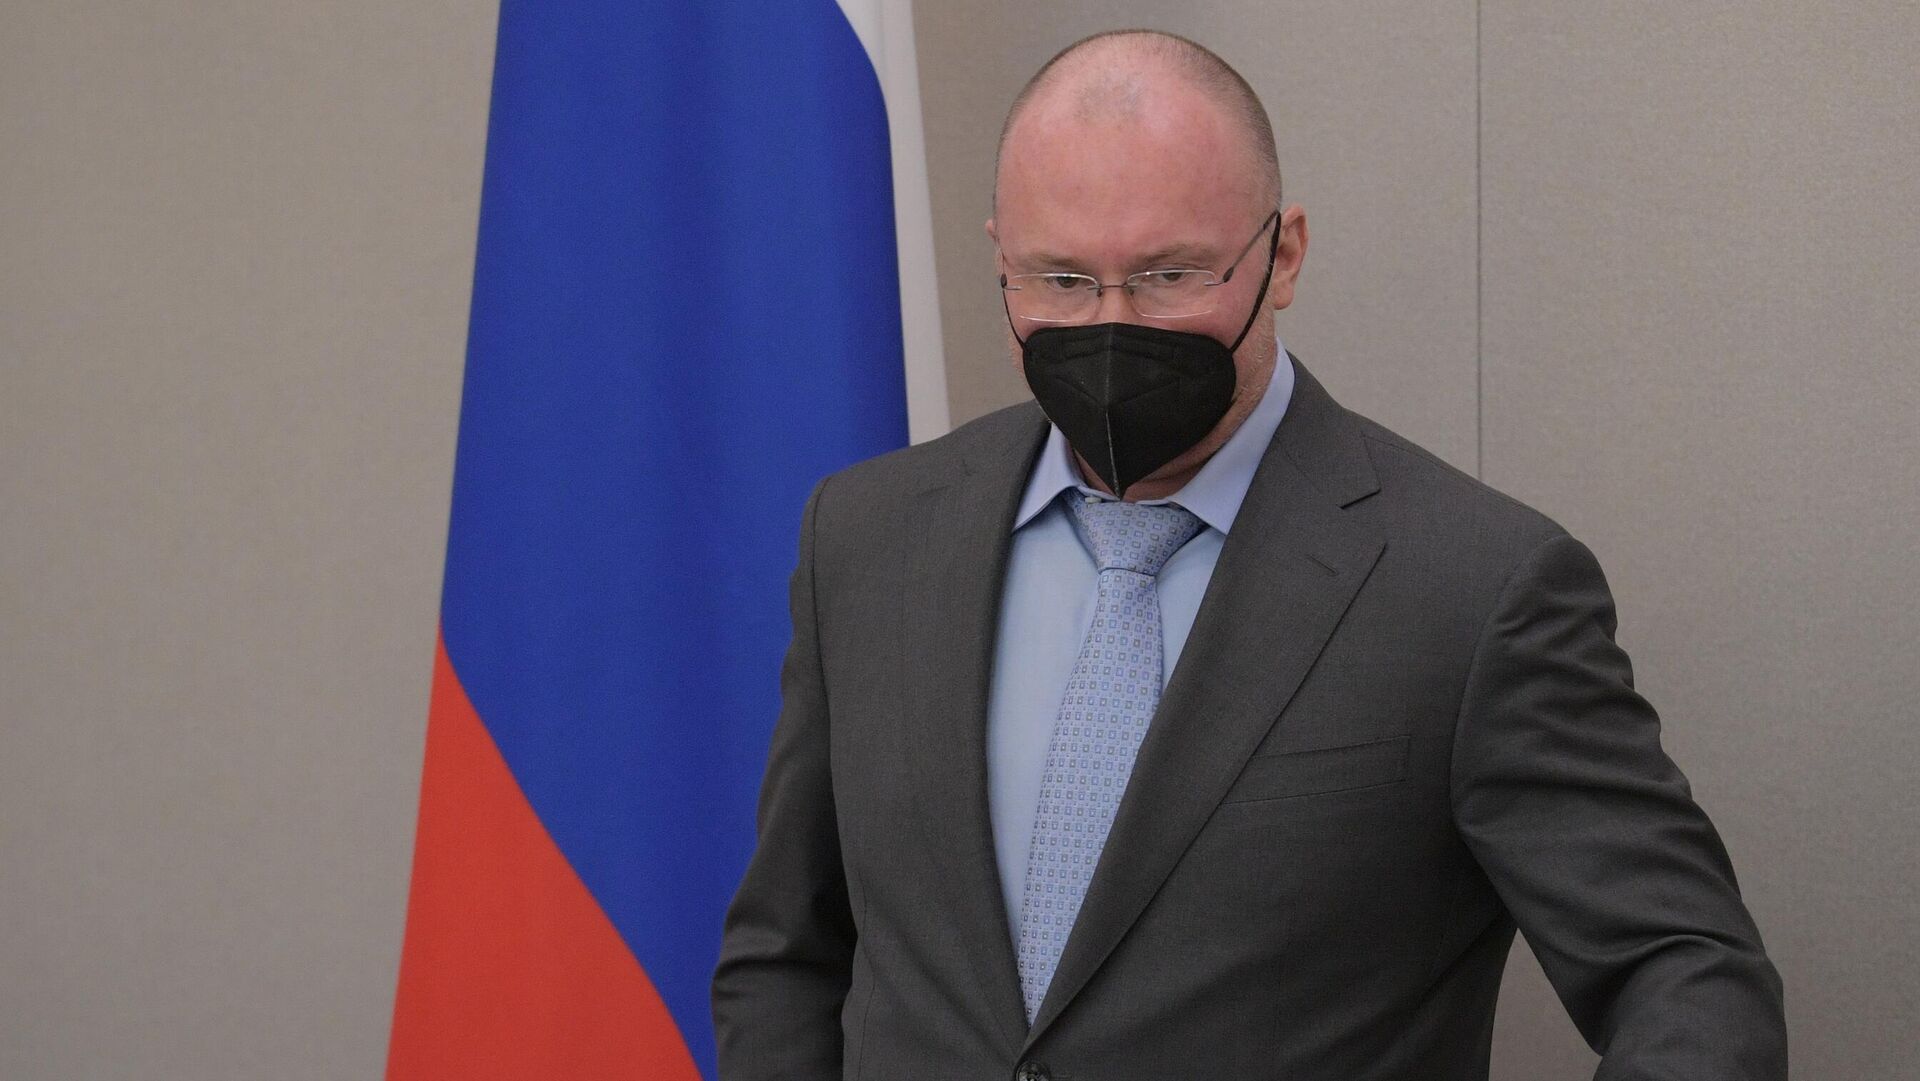 Вице-спикер Госдумы Лебедев решил приостановить политическую деятельность